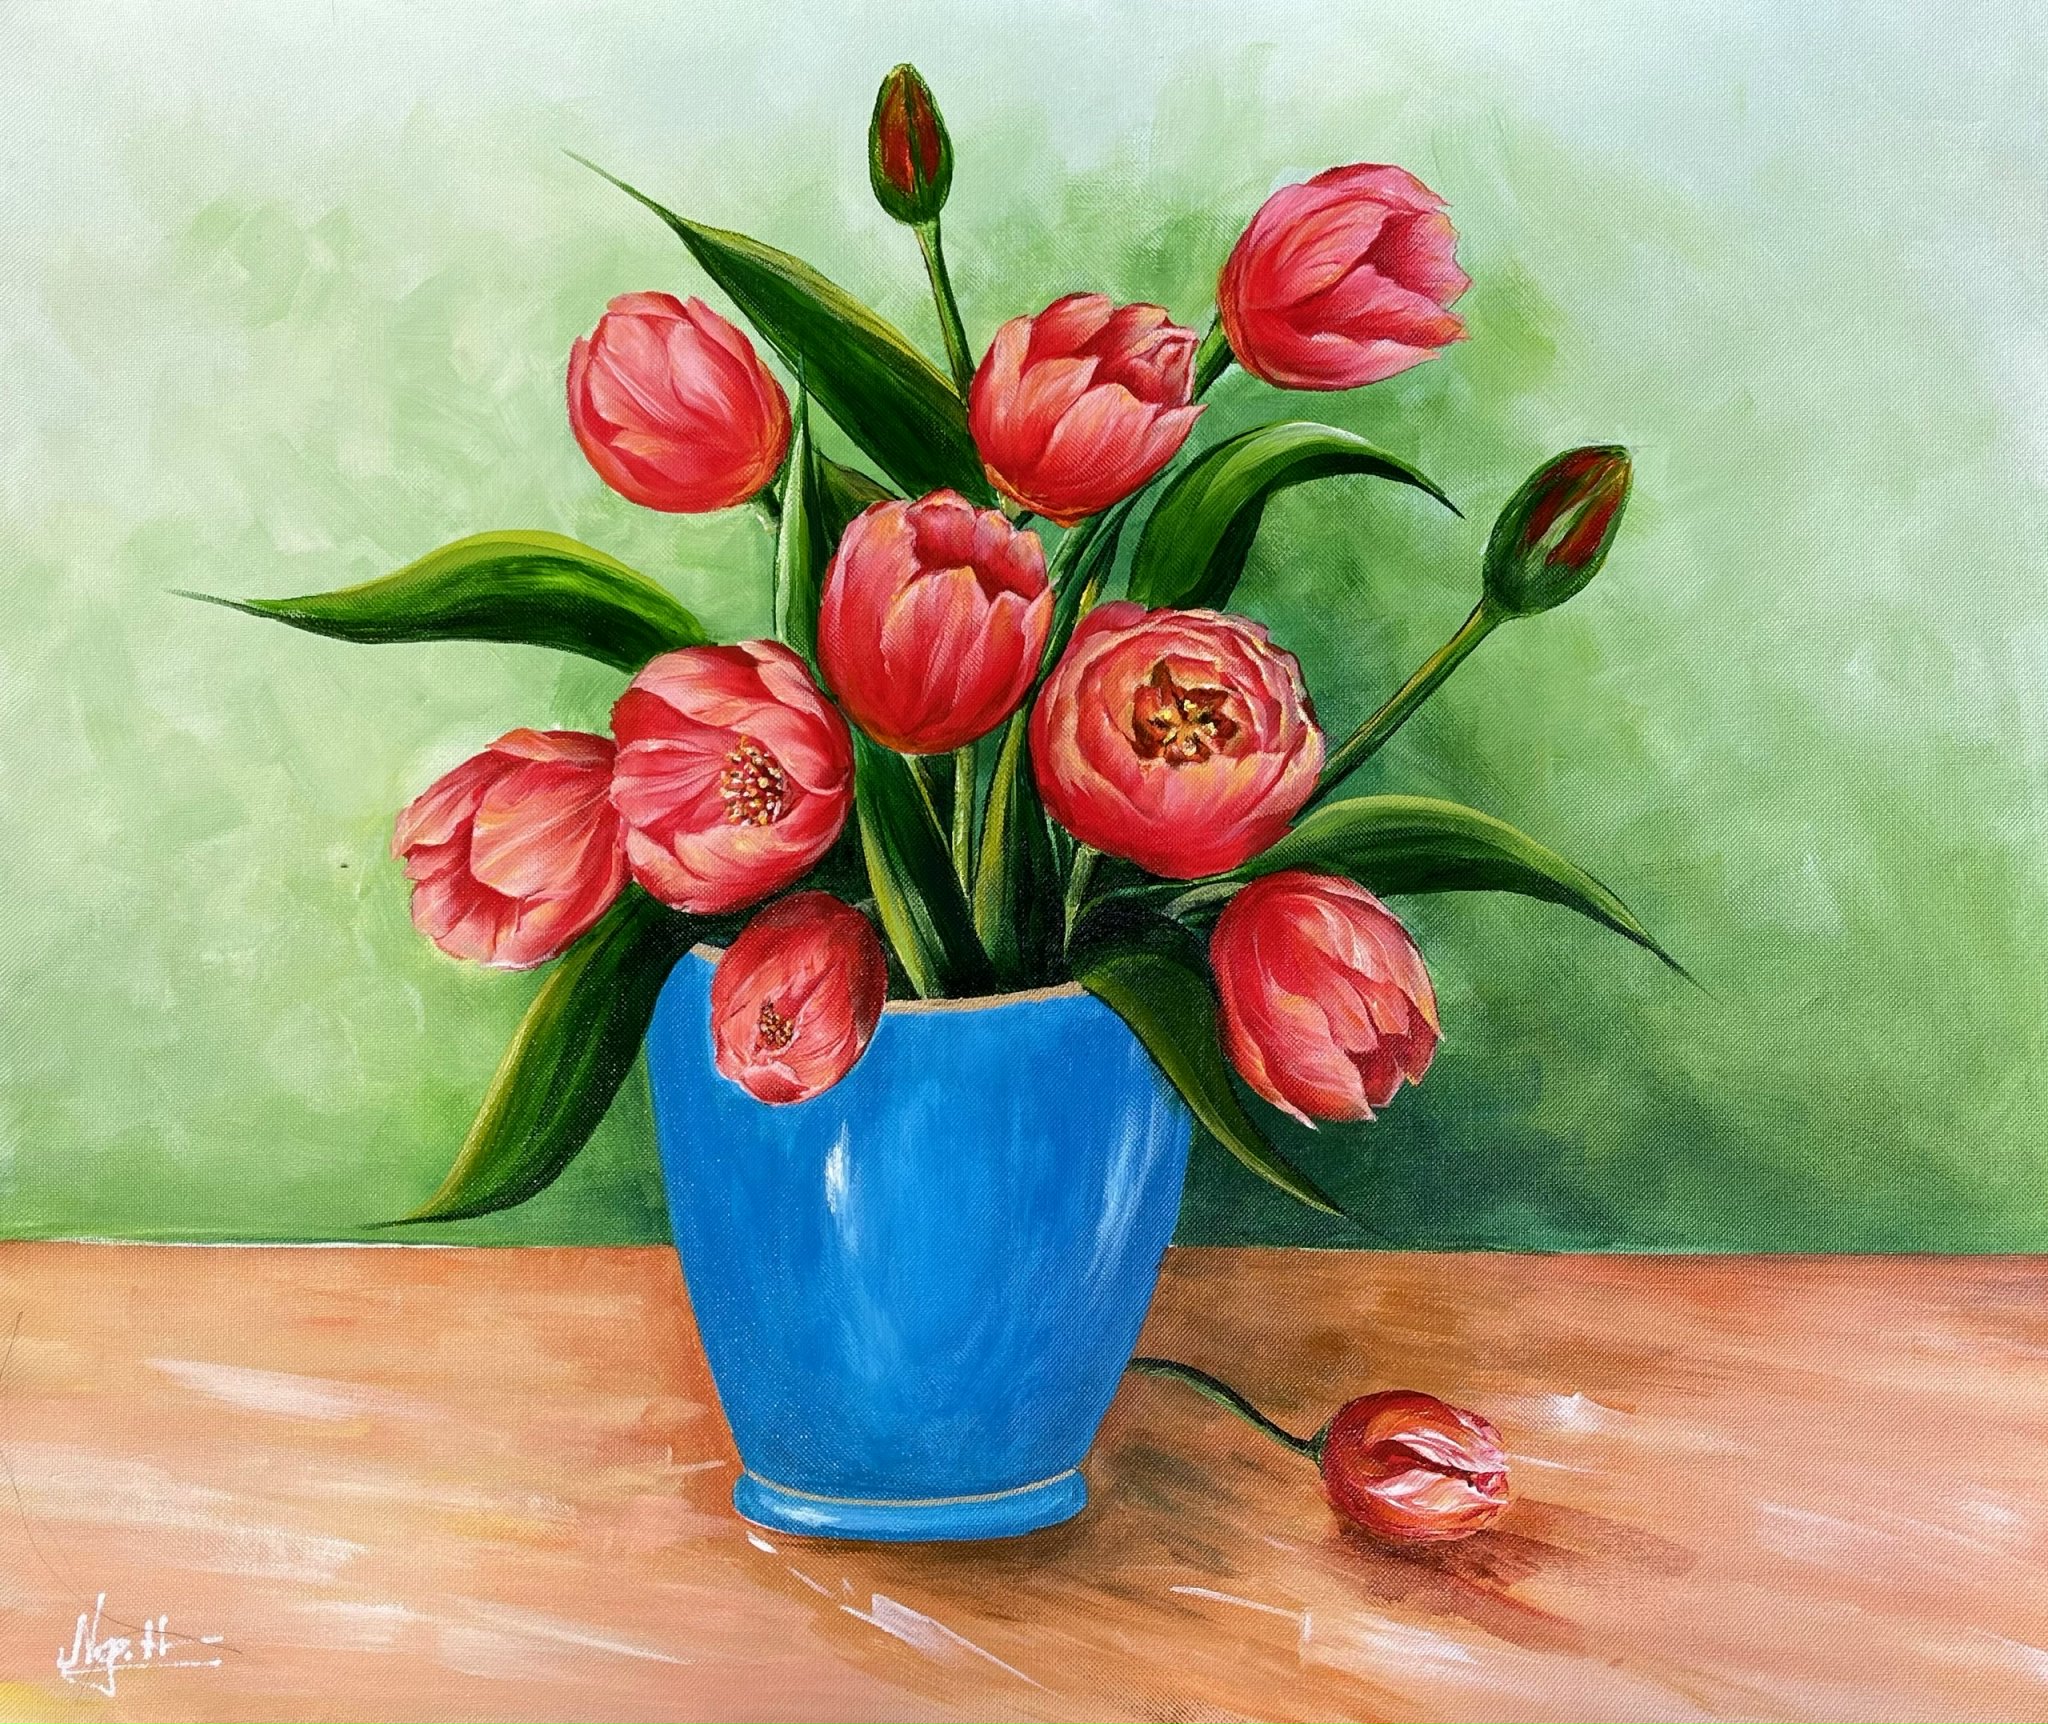 Với những tông màu đậm nét và tuyệt đẹp, hoa tulip luôn là lựa chọn hoàn hảo để tôn vinh mọi không gian. Và giờ đây, bạn có thể chiêm ngưỡng những hình ảnh rực rỡ của hoa tulip ngay tại đây - mỗi bức ảnh là một tác phẩm nghệ thuật.